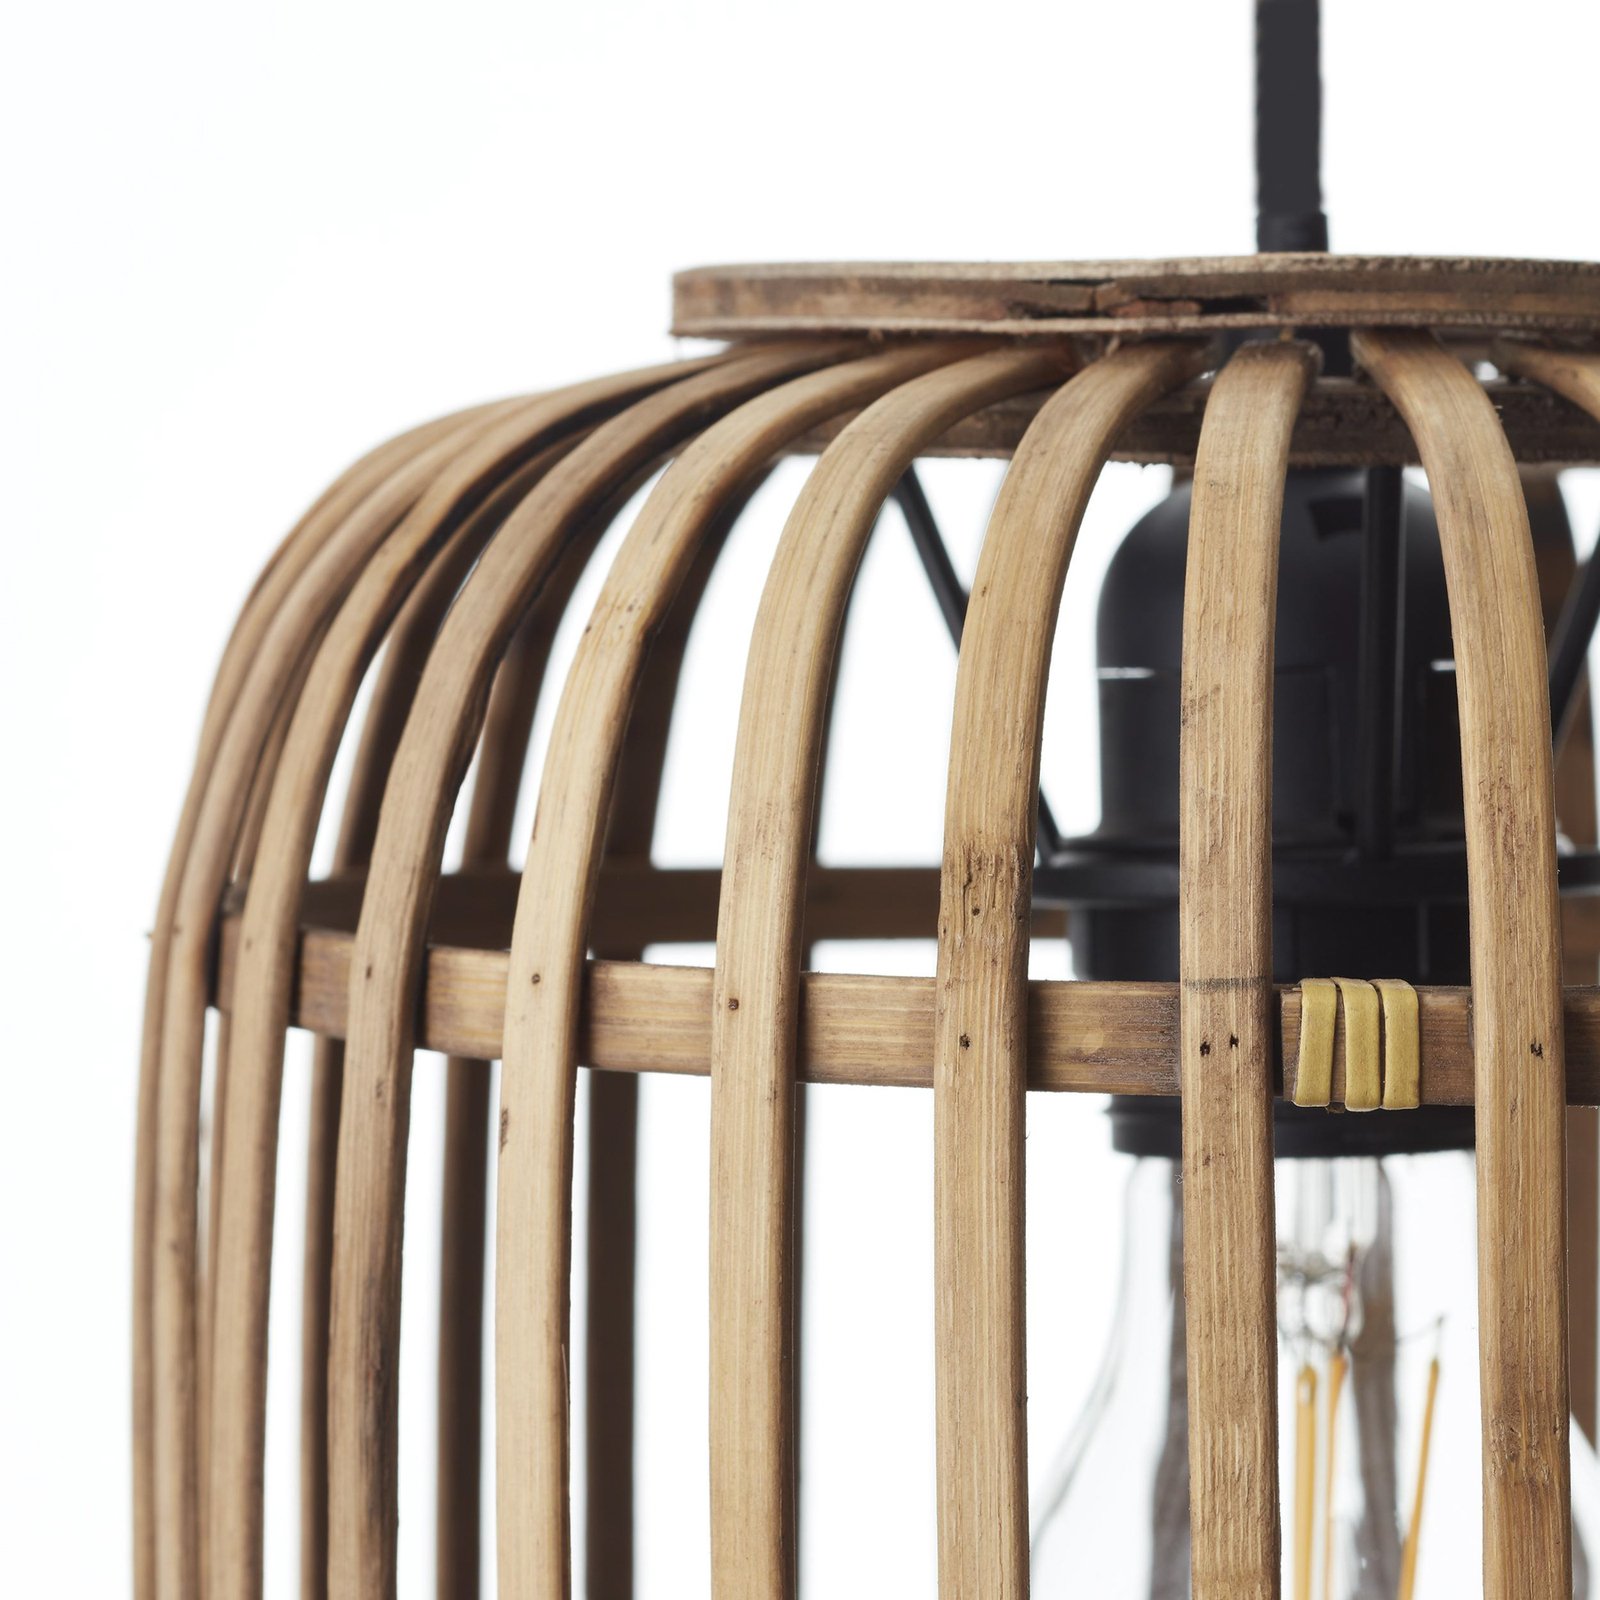 Závesná lampa Woodrow, dĺžka 105 cm, svetlé drevo, 3 svetlá, bambus